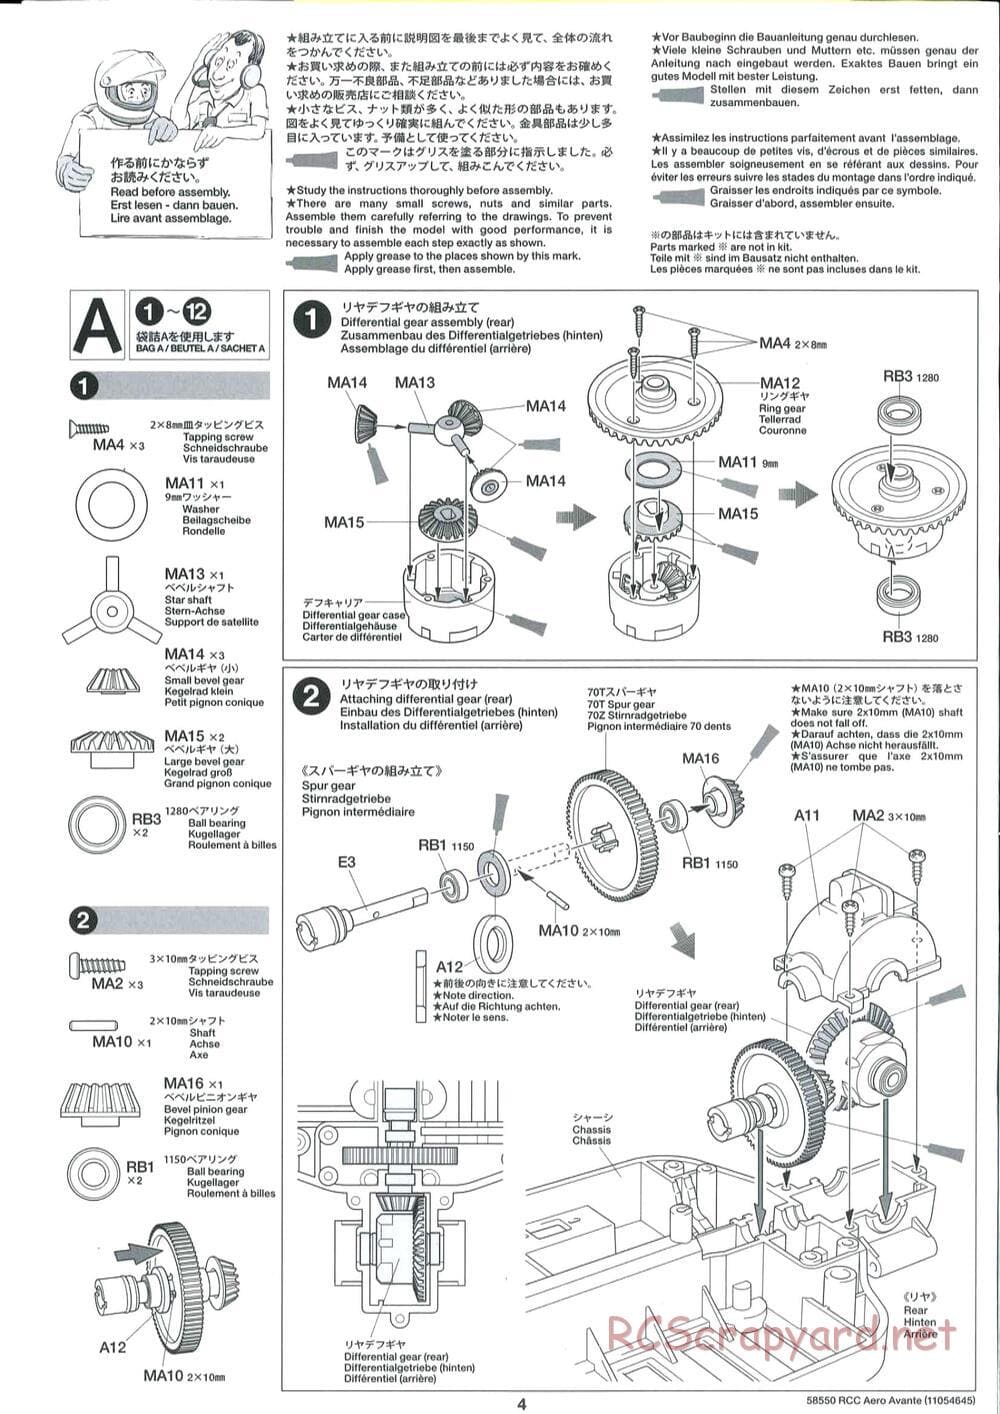 Tamiya - Aero Avante Chassis - Manual - Page 4